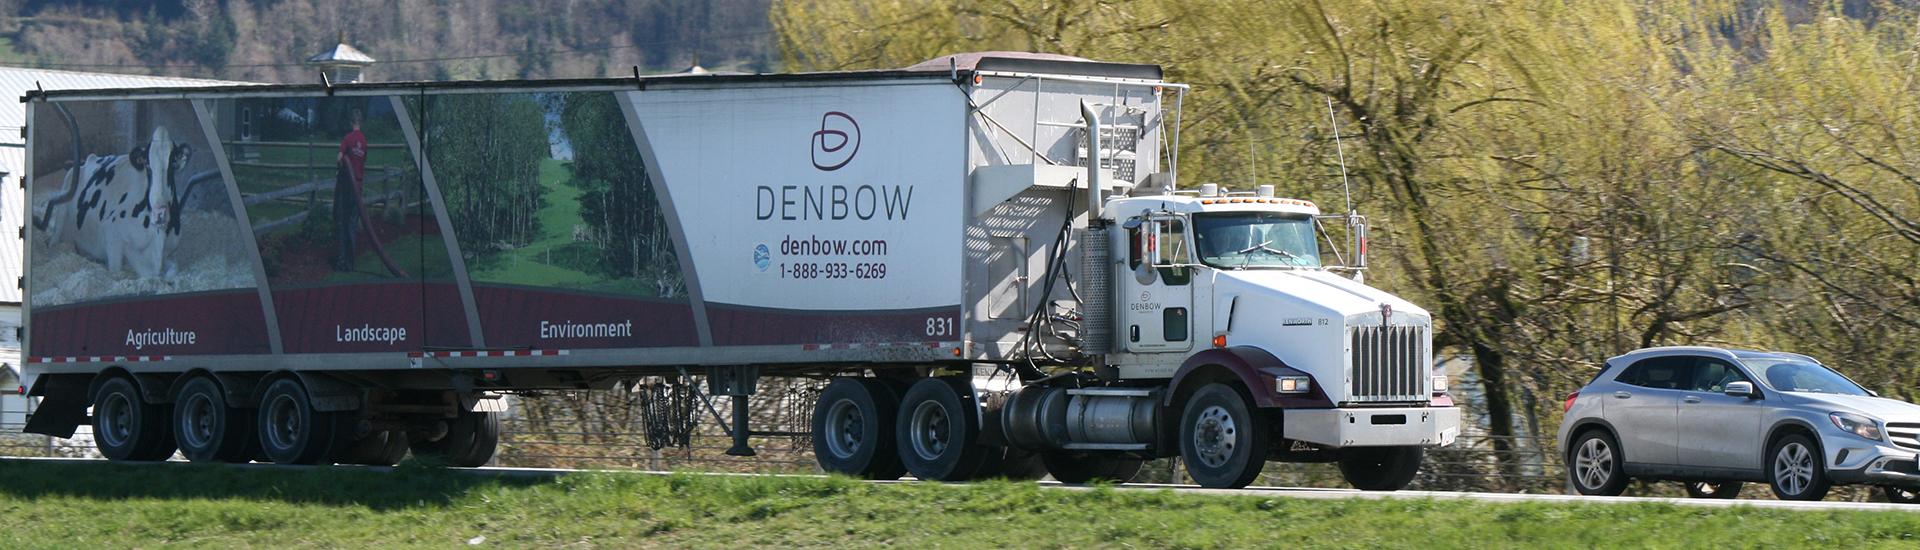 Denbow Bulk Transport Truck on highway